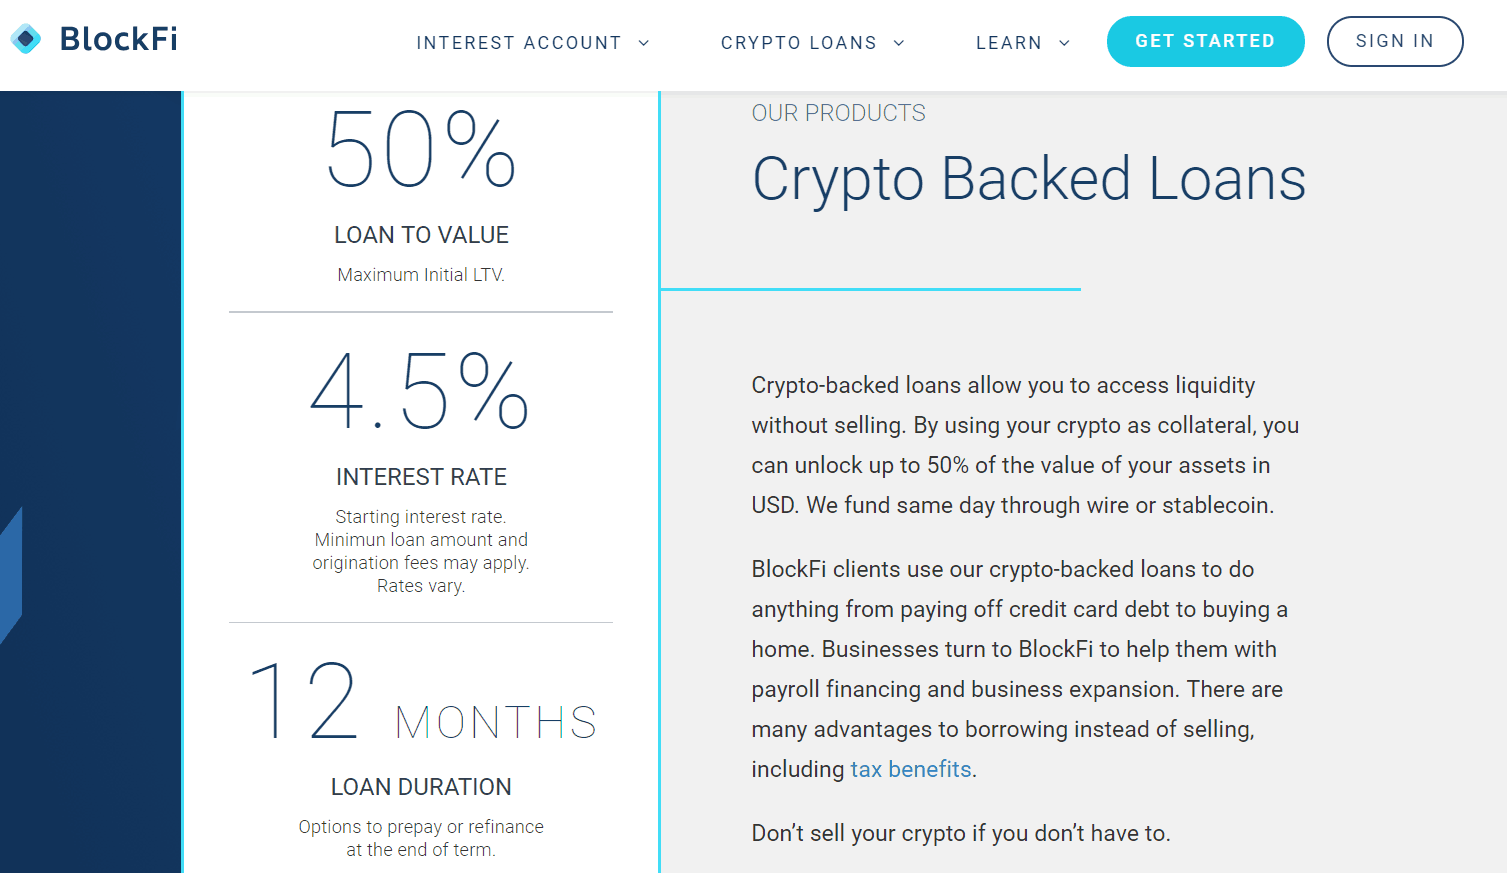 BlockFi Crypto Backed Loans